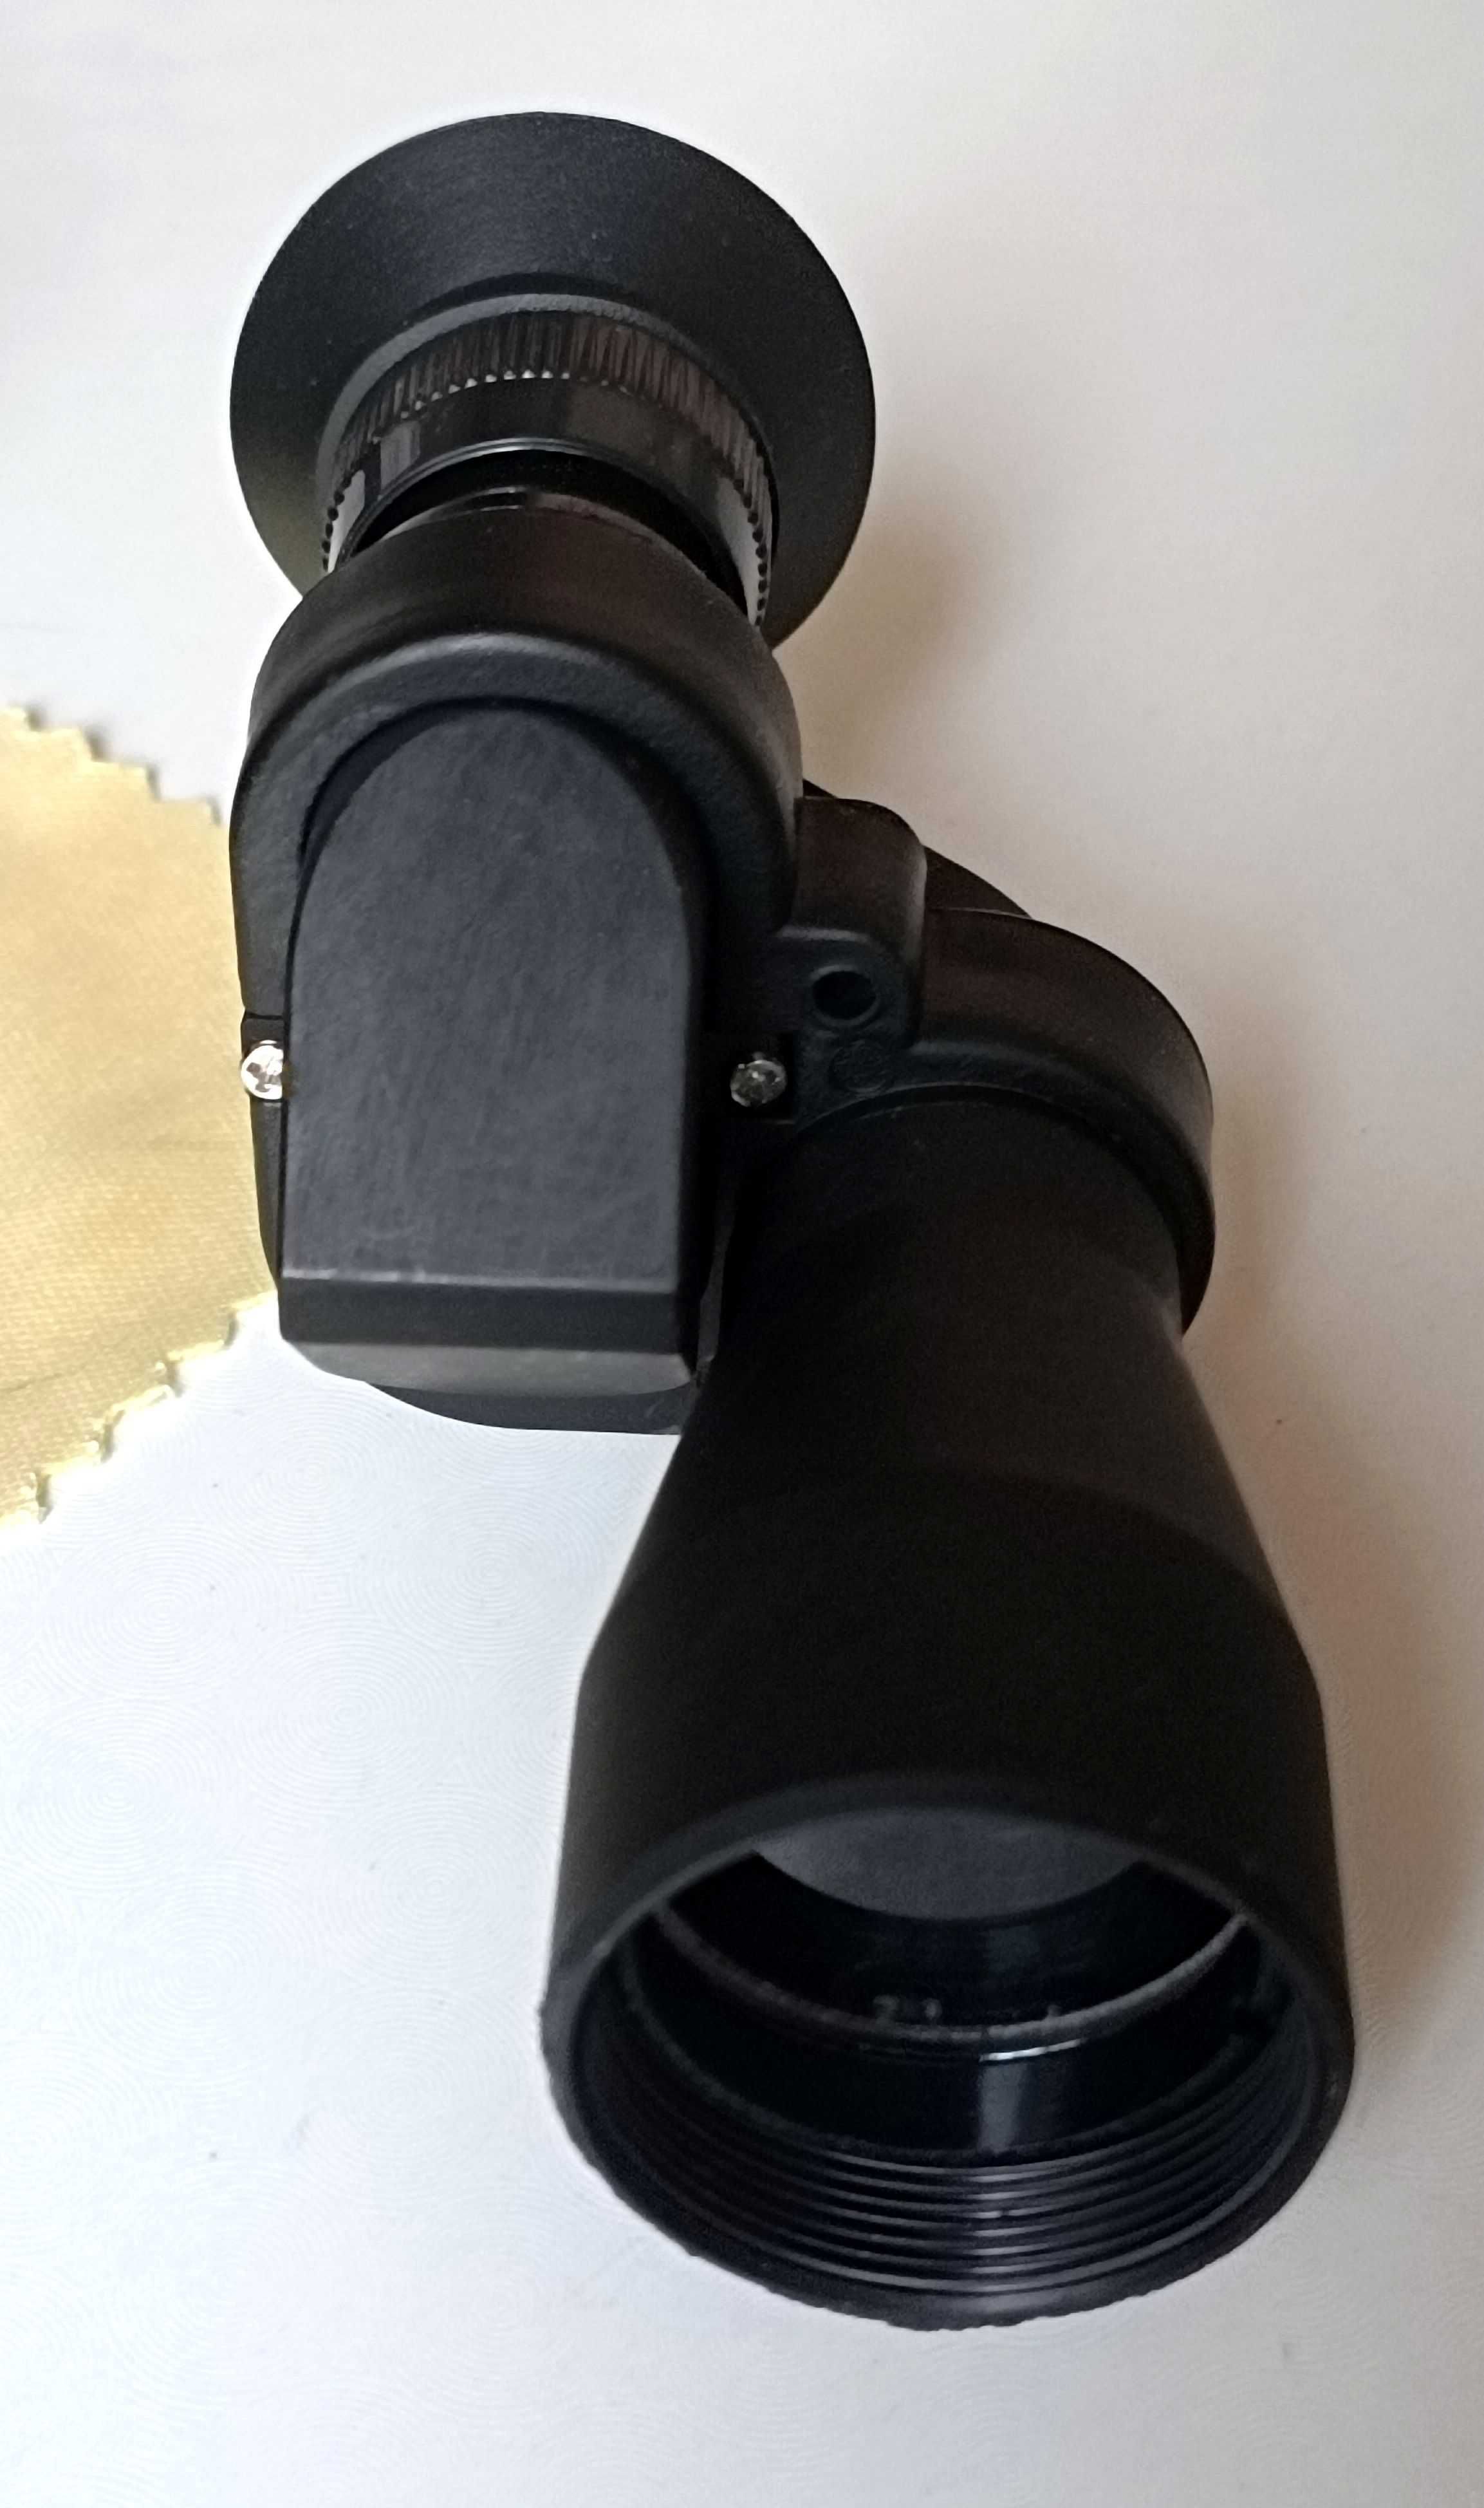 монокулярный телескоп мини карманный